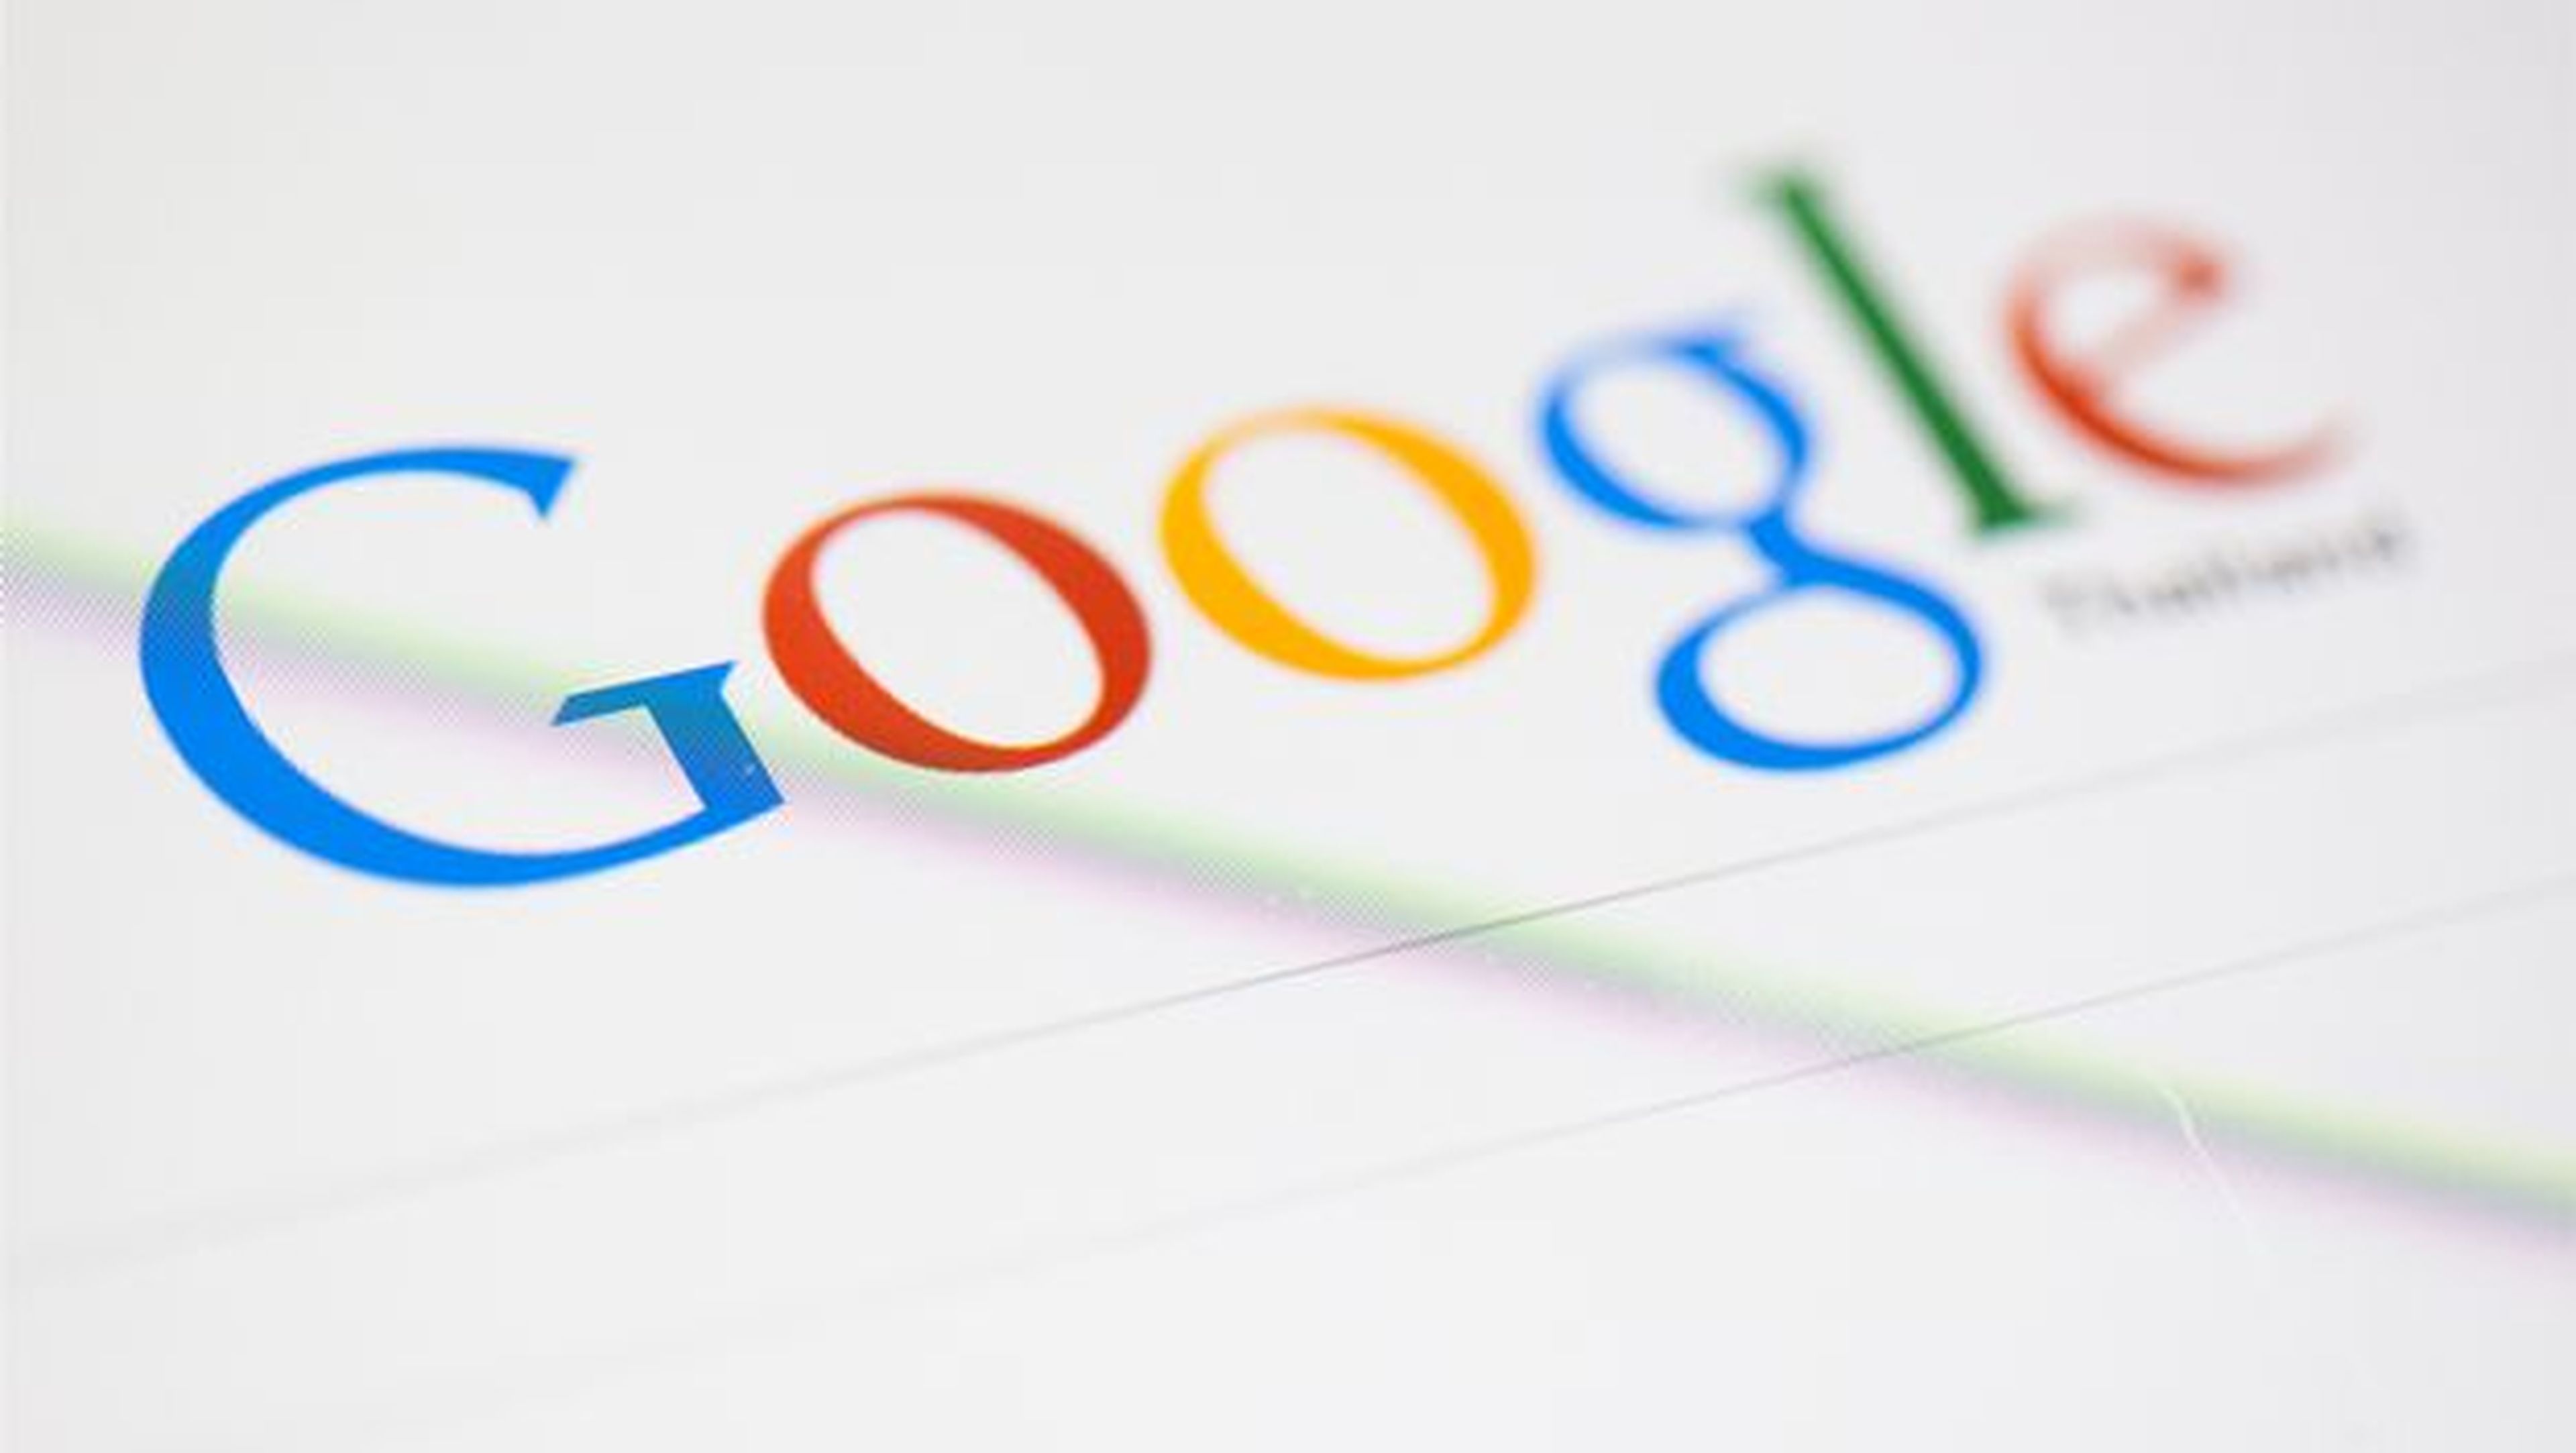 Google elimina la función Google Instant Search